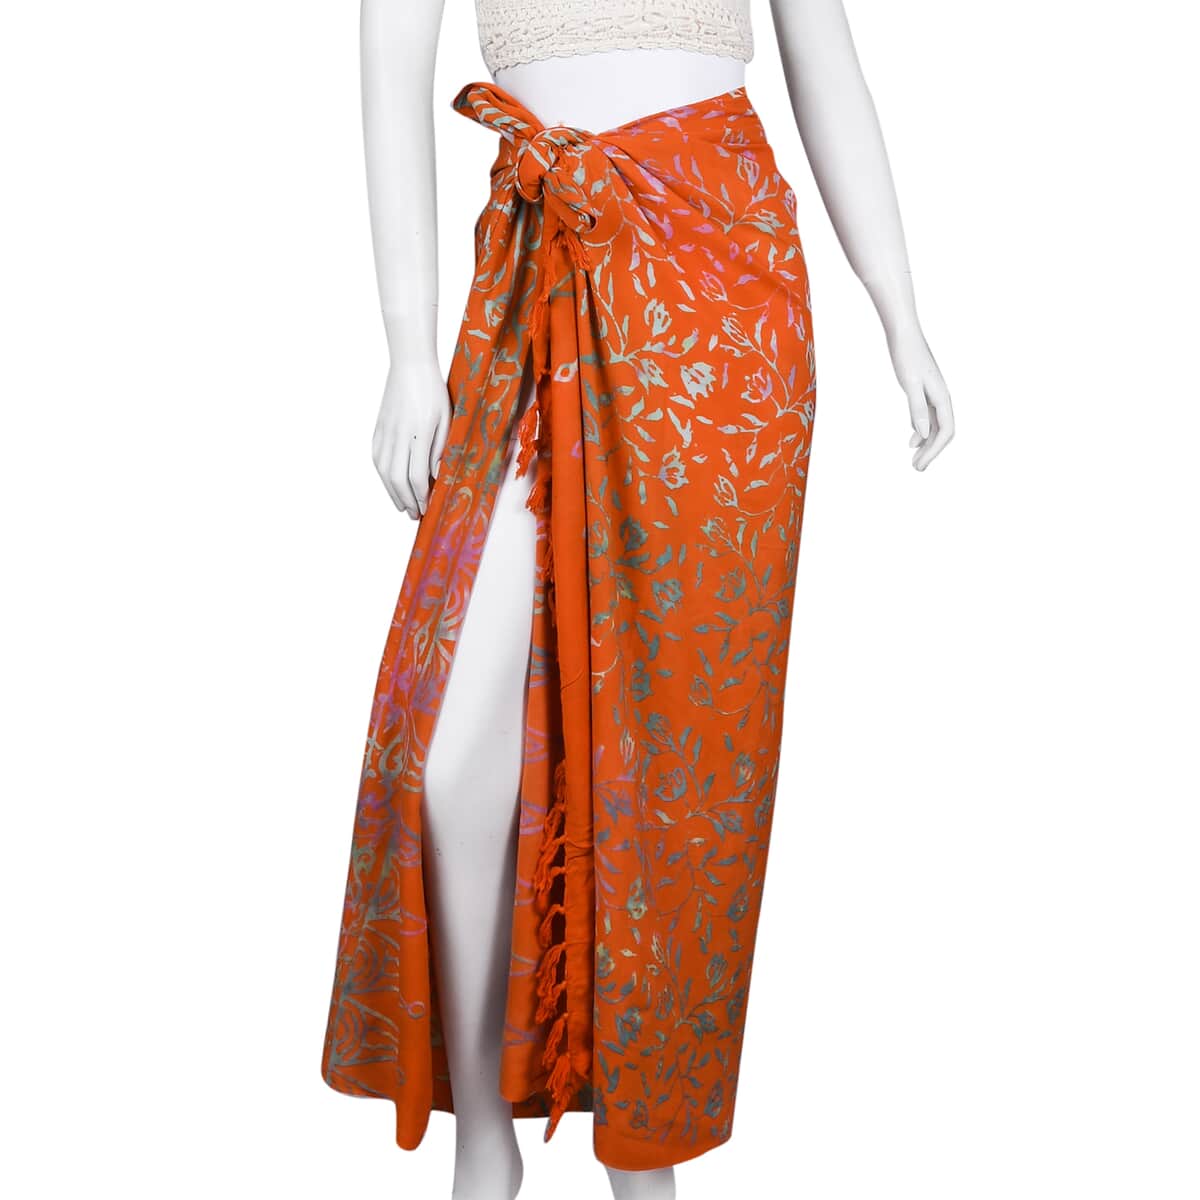 Handmade Golden Orange Floral Motif Pattern 100% Rayon Sarong | Women's Saron Wrap | Sarong Skirt | Beach Sarong Cover Up image number 1